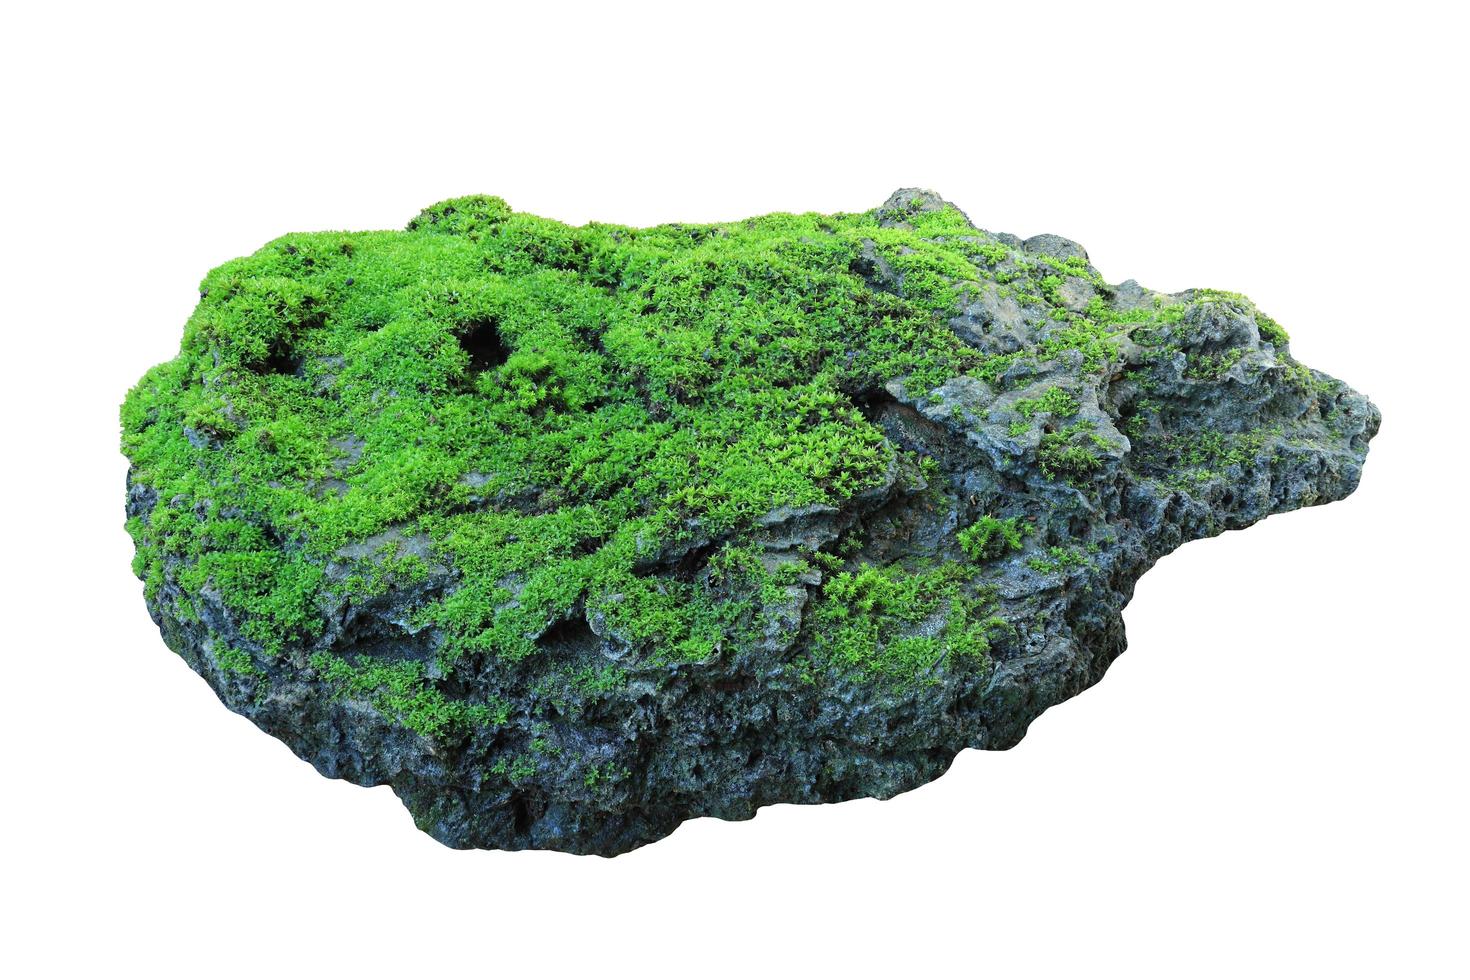 rocha coberta de musgo verde isolado no fundo branco foto